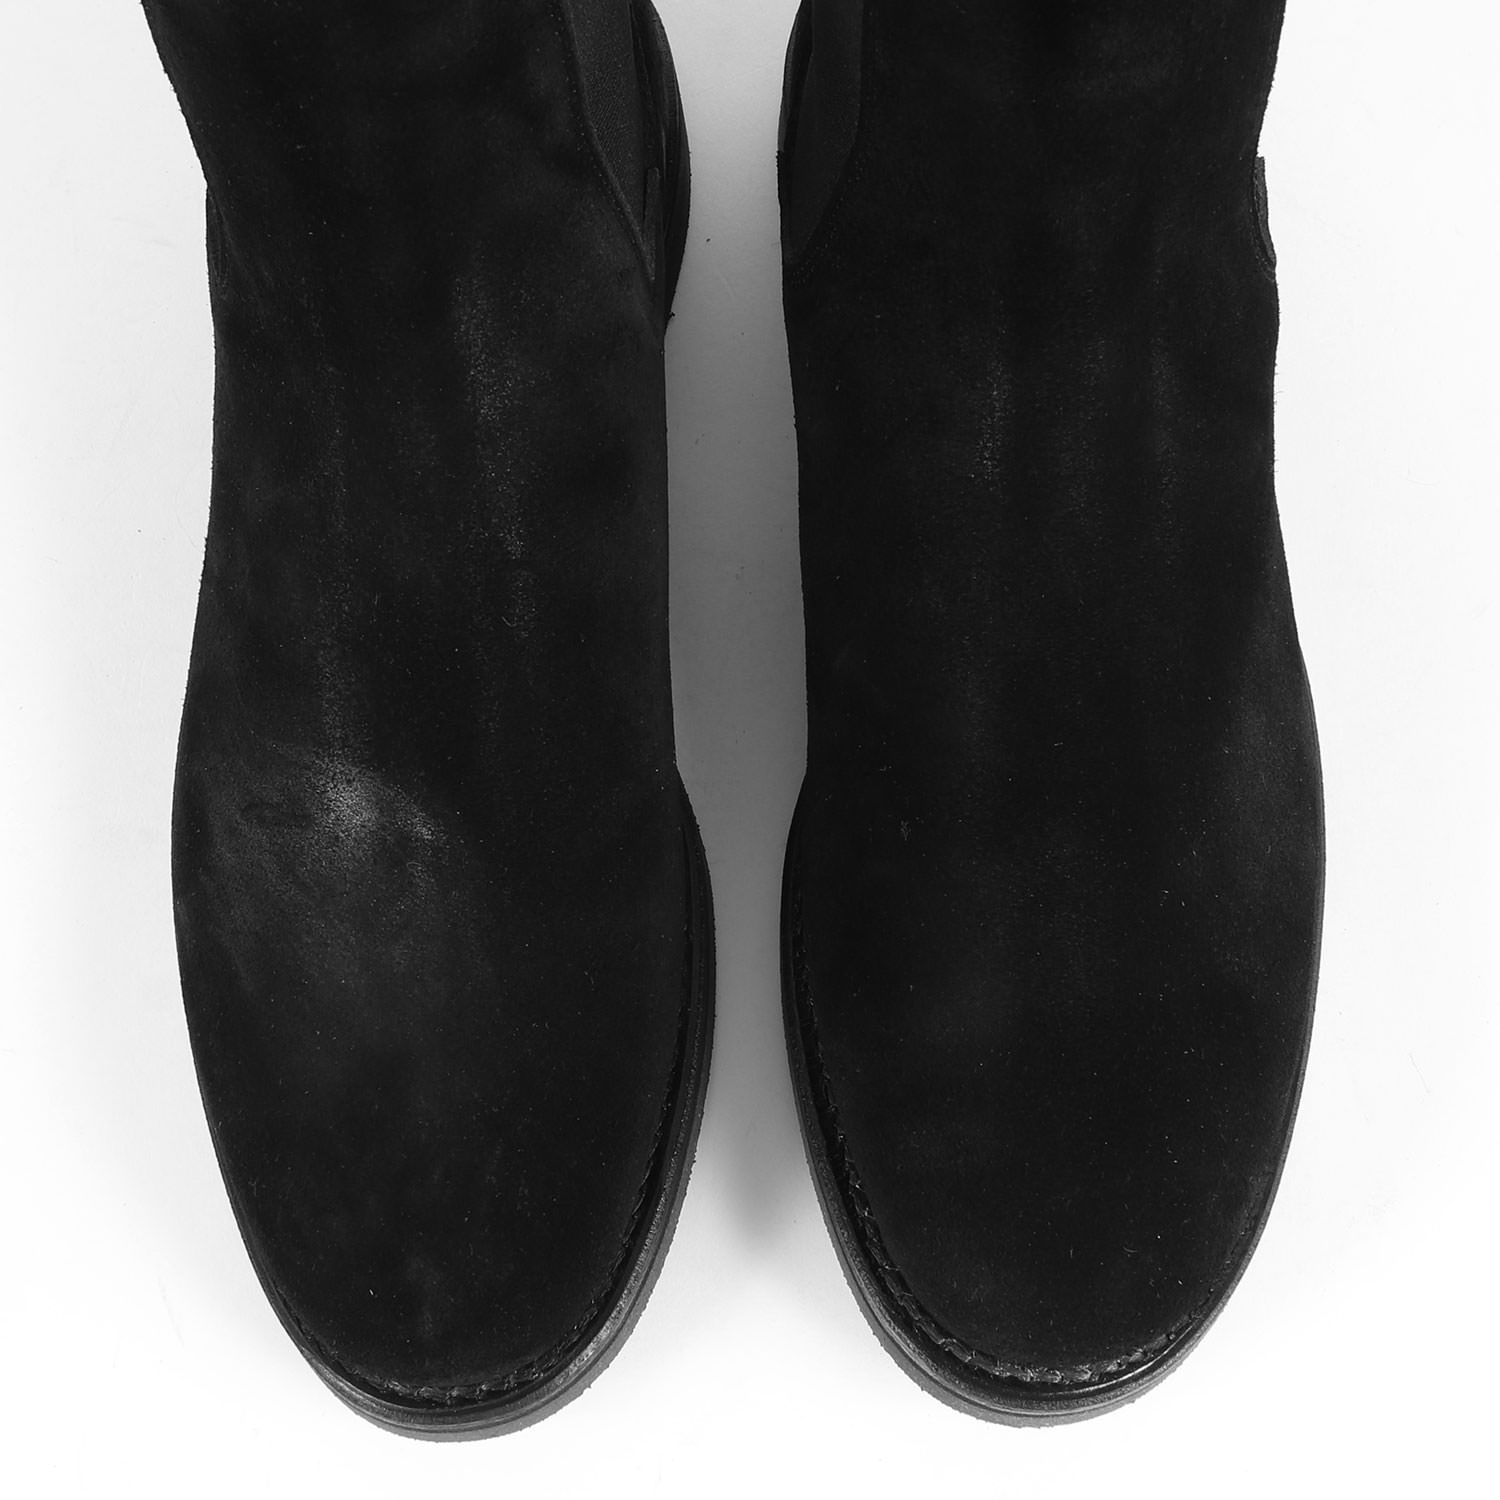 MINEDENIM マインデニム ブーツ サイズ:41 スエード レザー サイドゴアブーツ Suede Leather Side Gore Boots MGK-001-99-412 シューズ クレープソール グッドイヤーウェルト製法 23SS ブラック シューズ 靴【メンズ】【美品】【K3737】